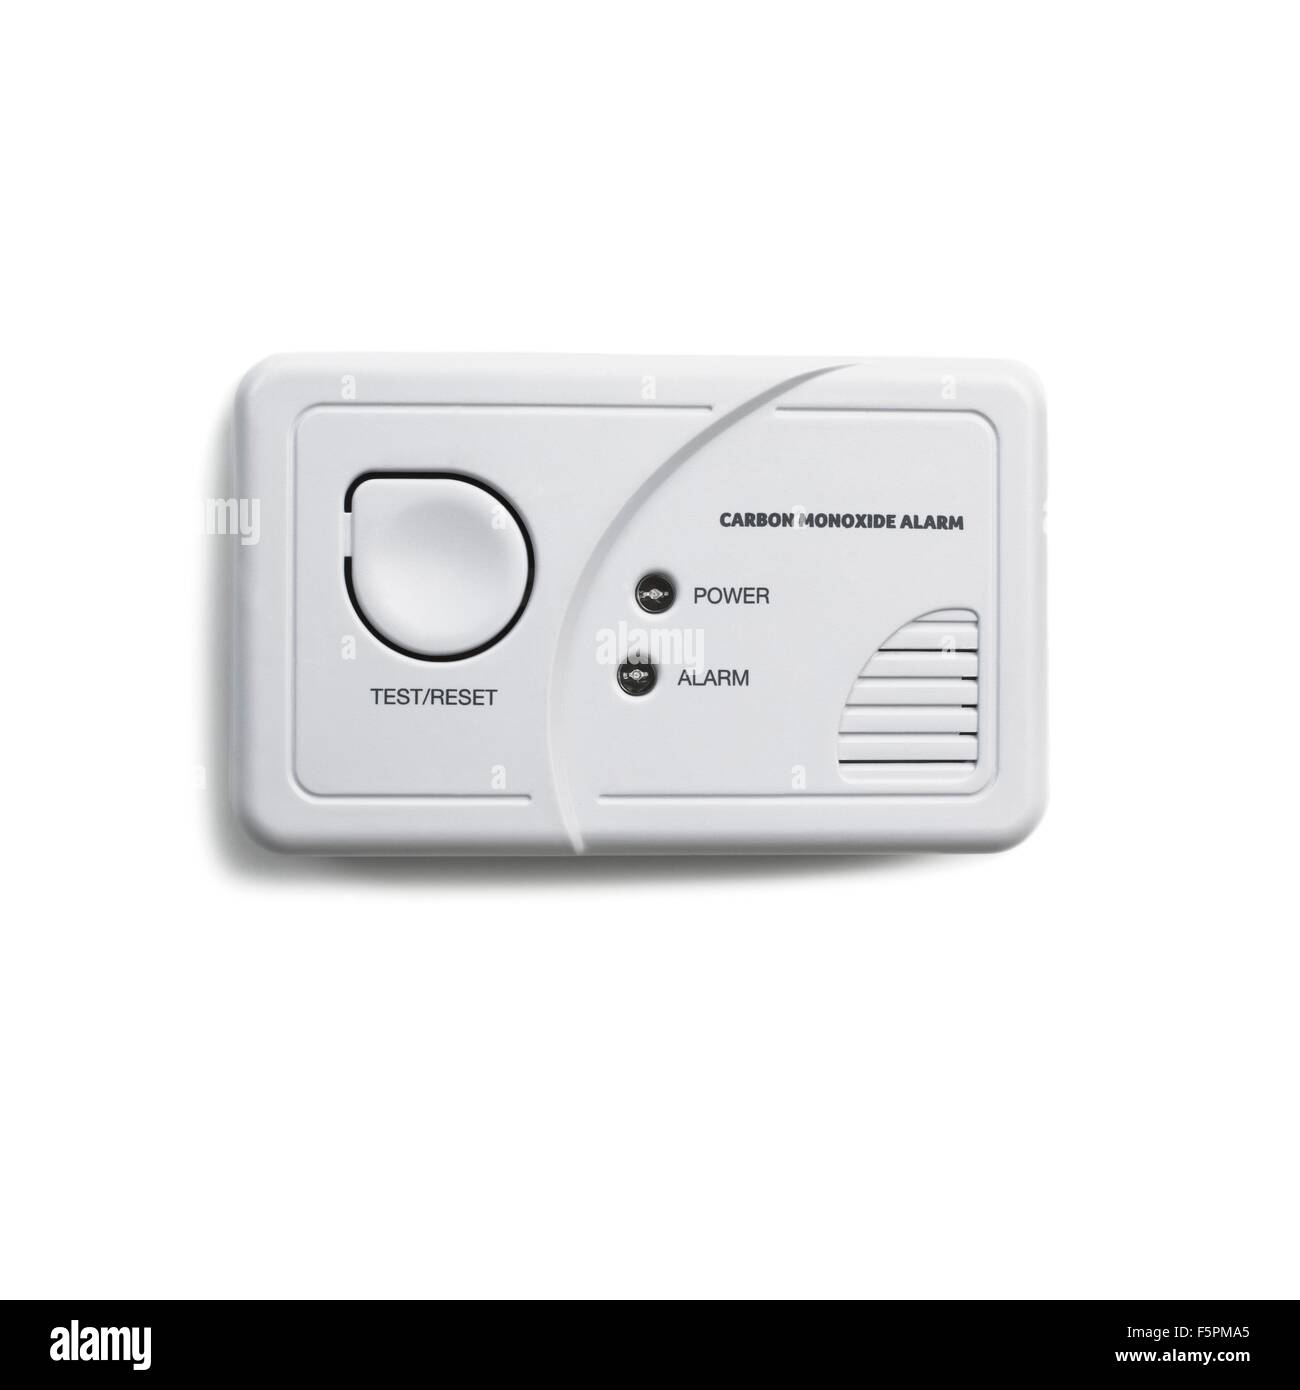 Carbon monoxide alarm against a white background. Stock Photo